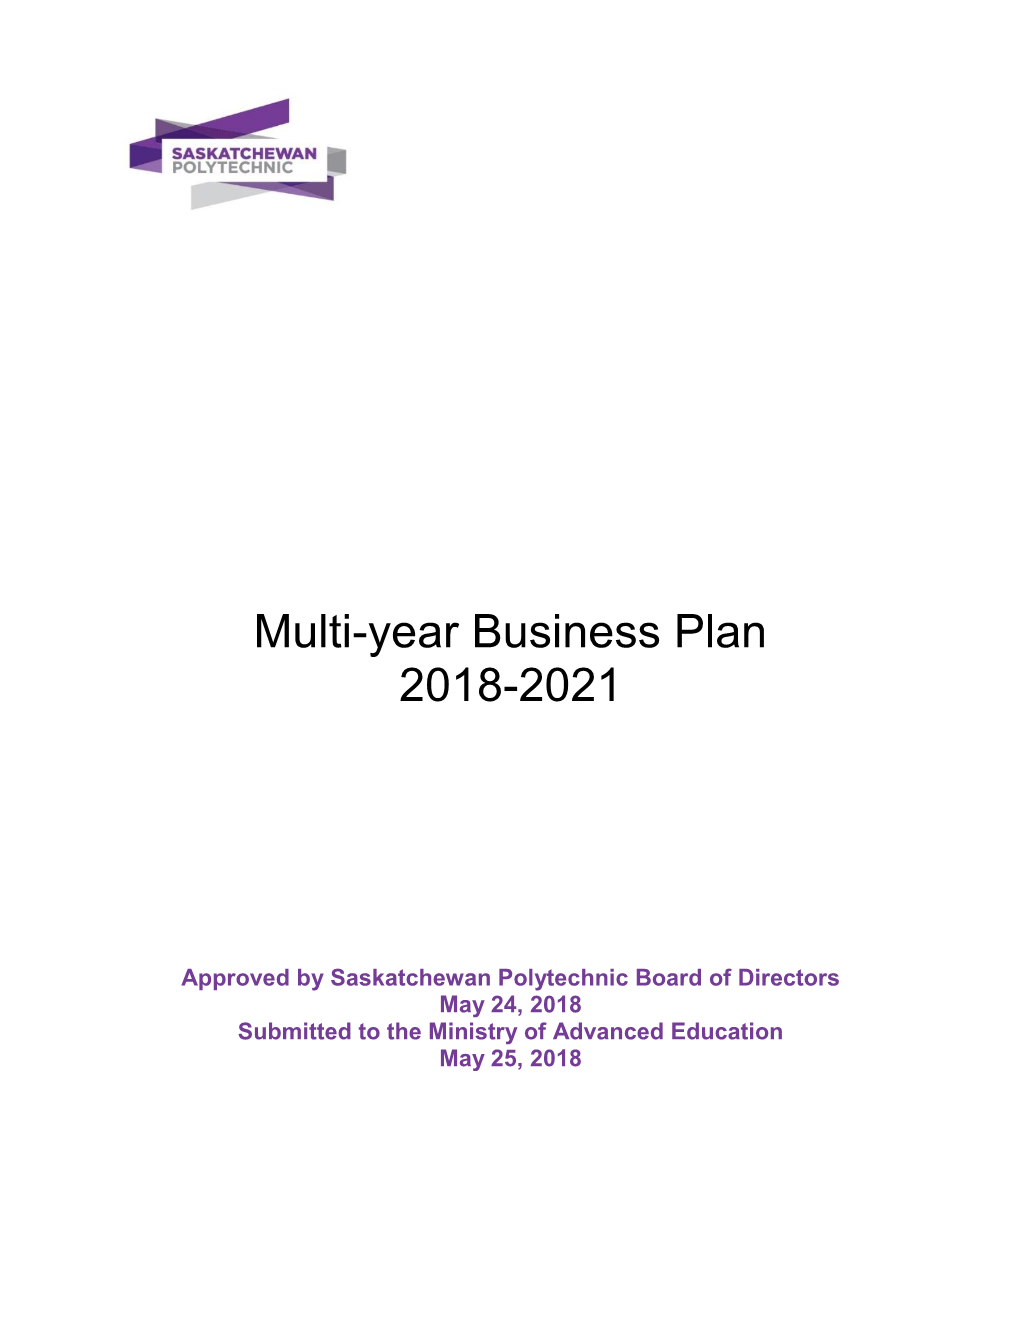 Multi-Year Business Plan 2018-2021